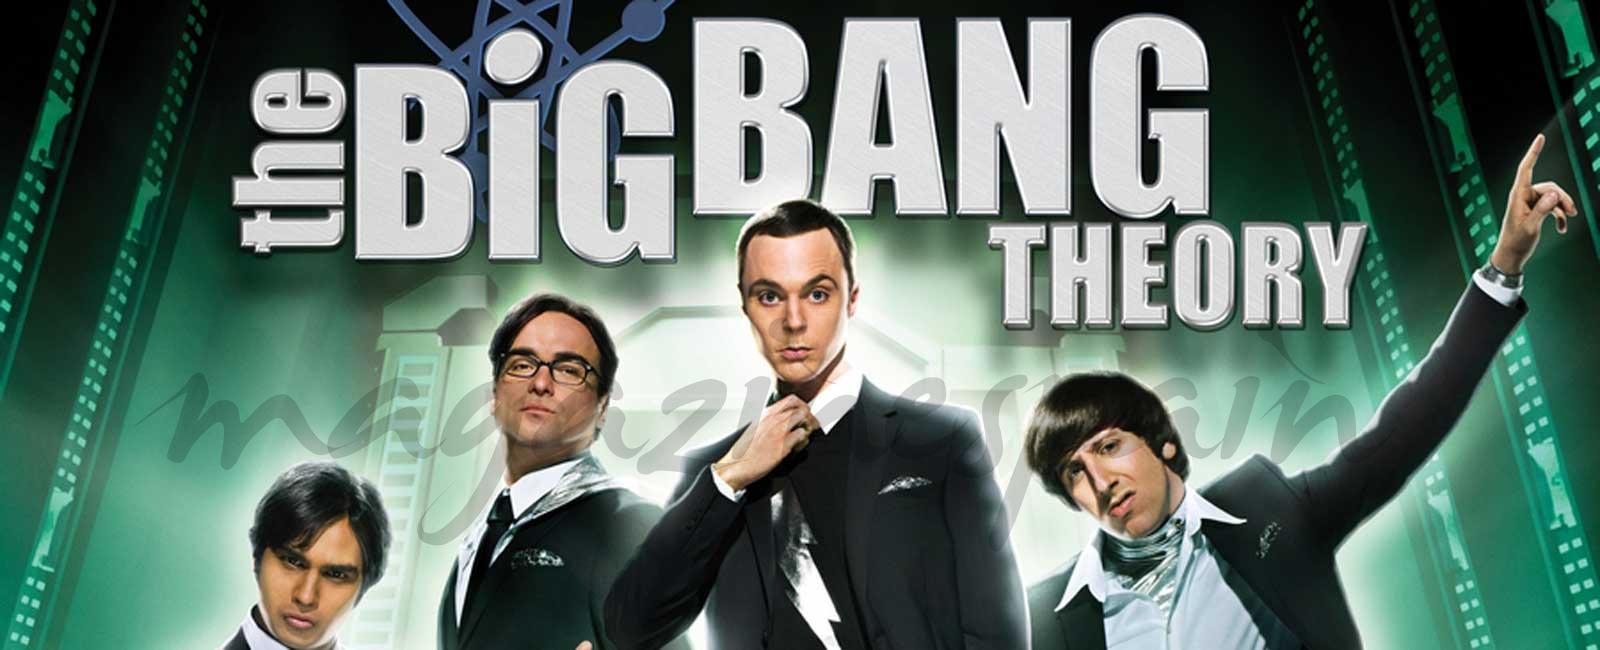 “The Big Bang Theory”, estreno de la décima temporada el 19 de septiembre